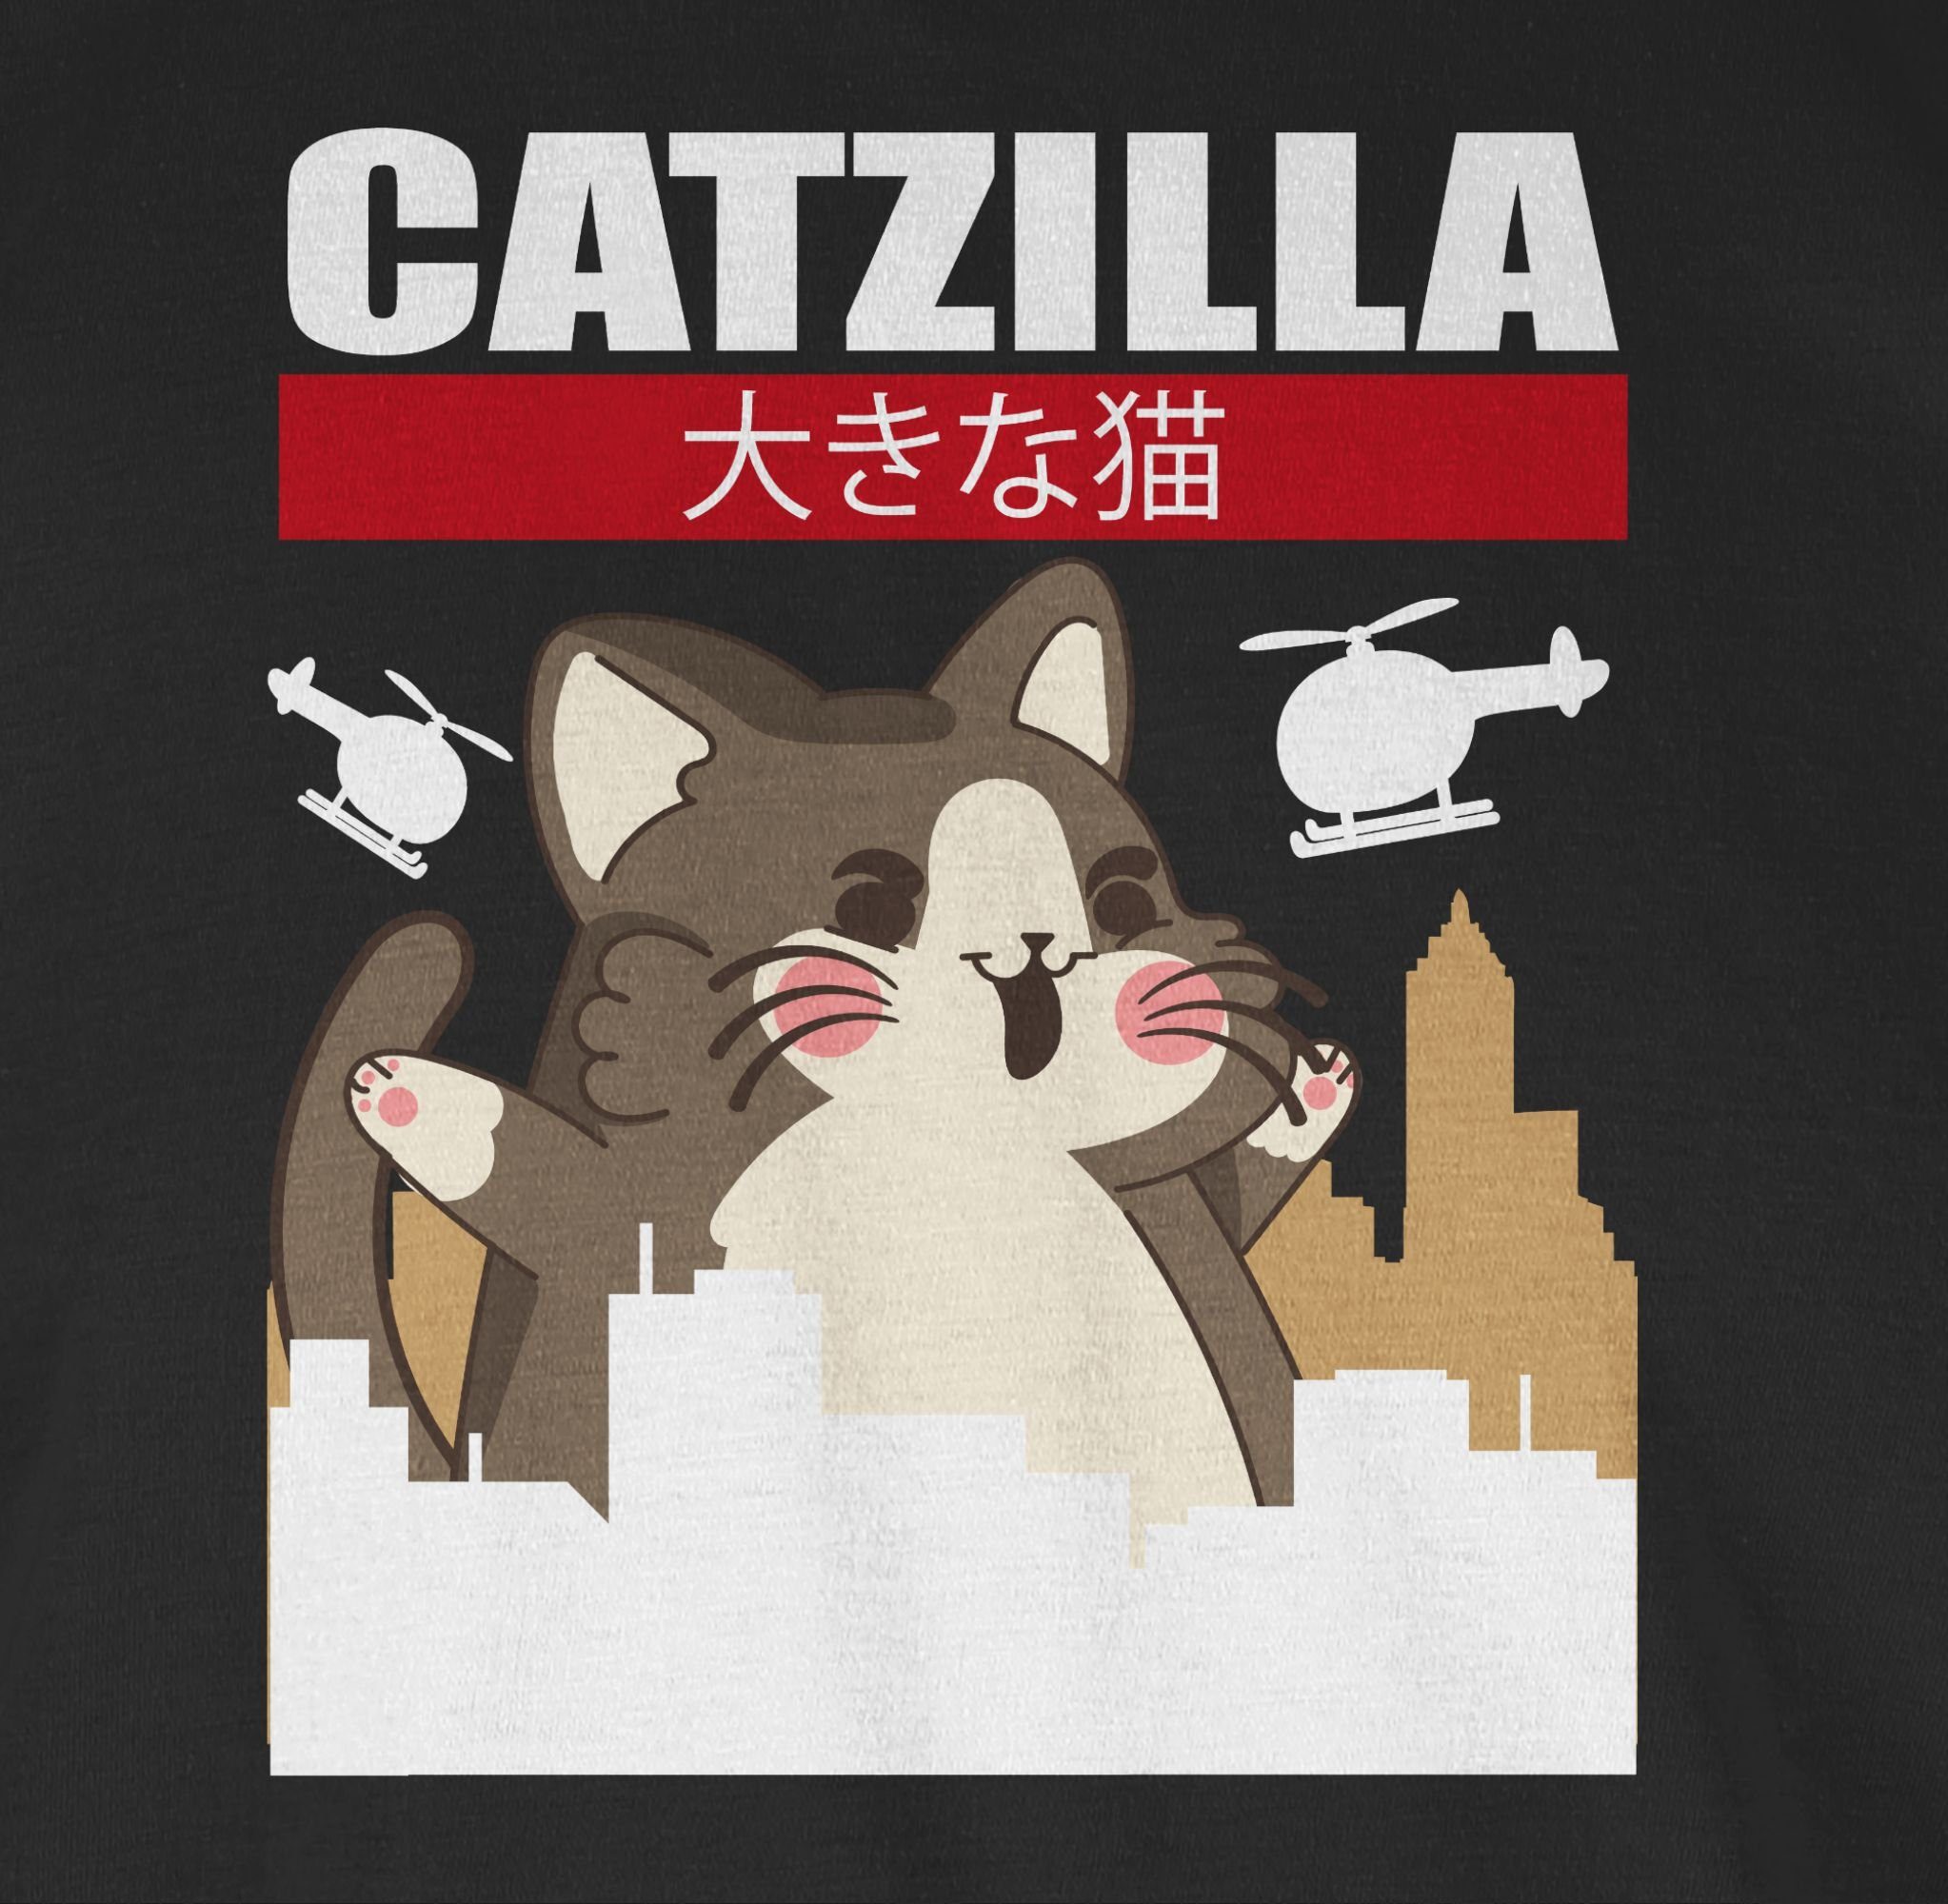 Geschenke Schwarz Shirtracer Anime Big Cat Catzilla T-Shirt 1 -